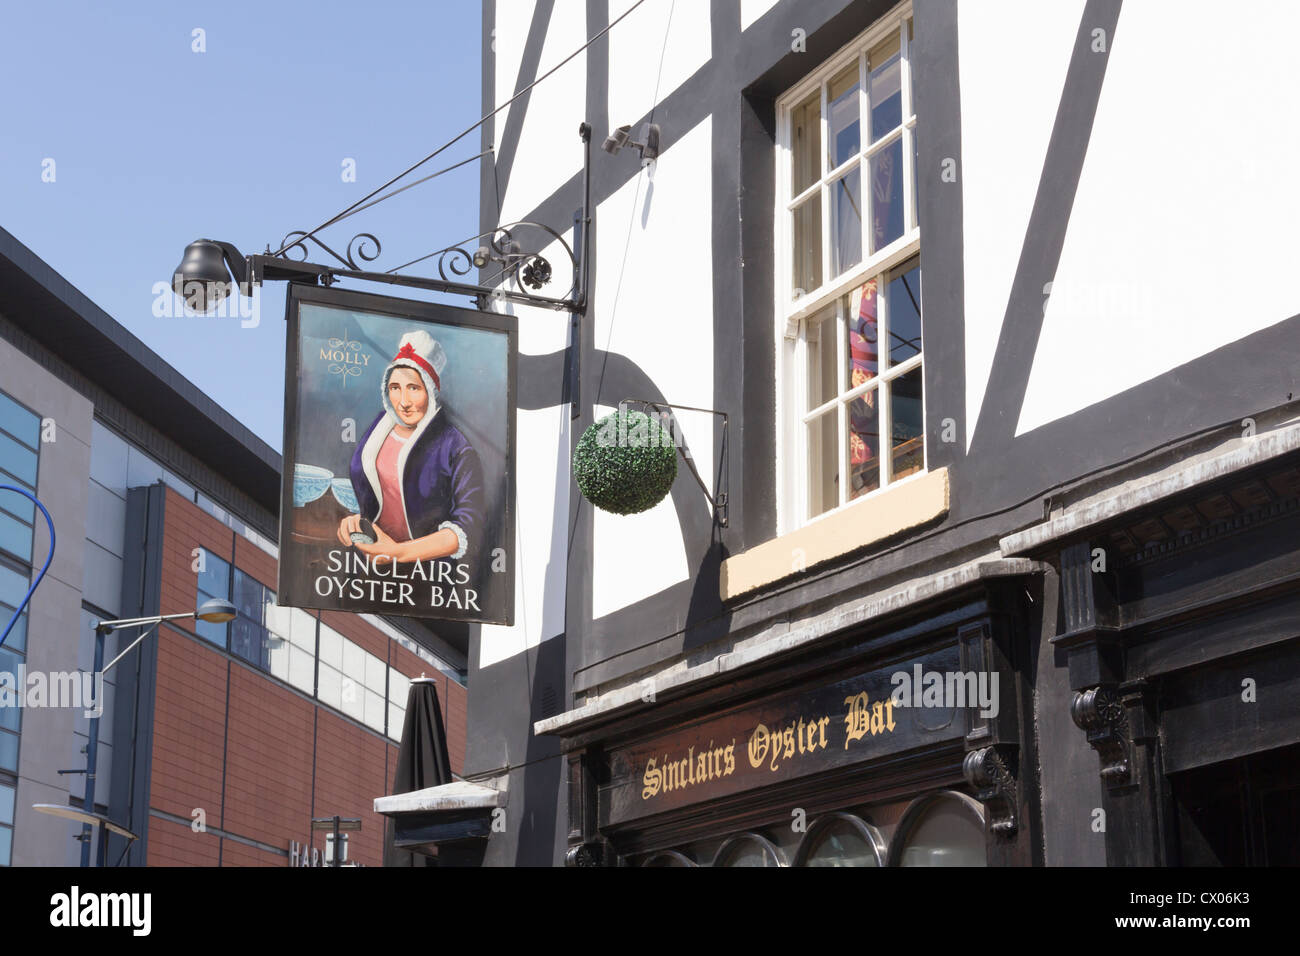 Enseigne de pub à Sinclairs Oyster Bar, représentant de Manchester, le redoutable Molly Owen et du 18ème siècle et y barmaid. Banque D'Images